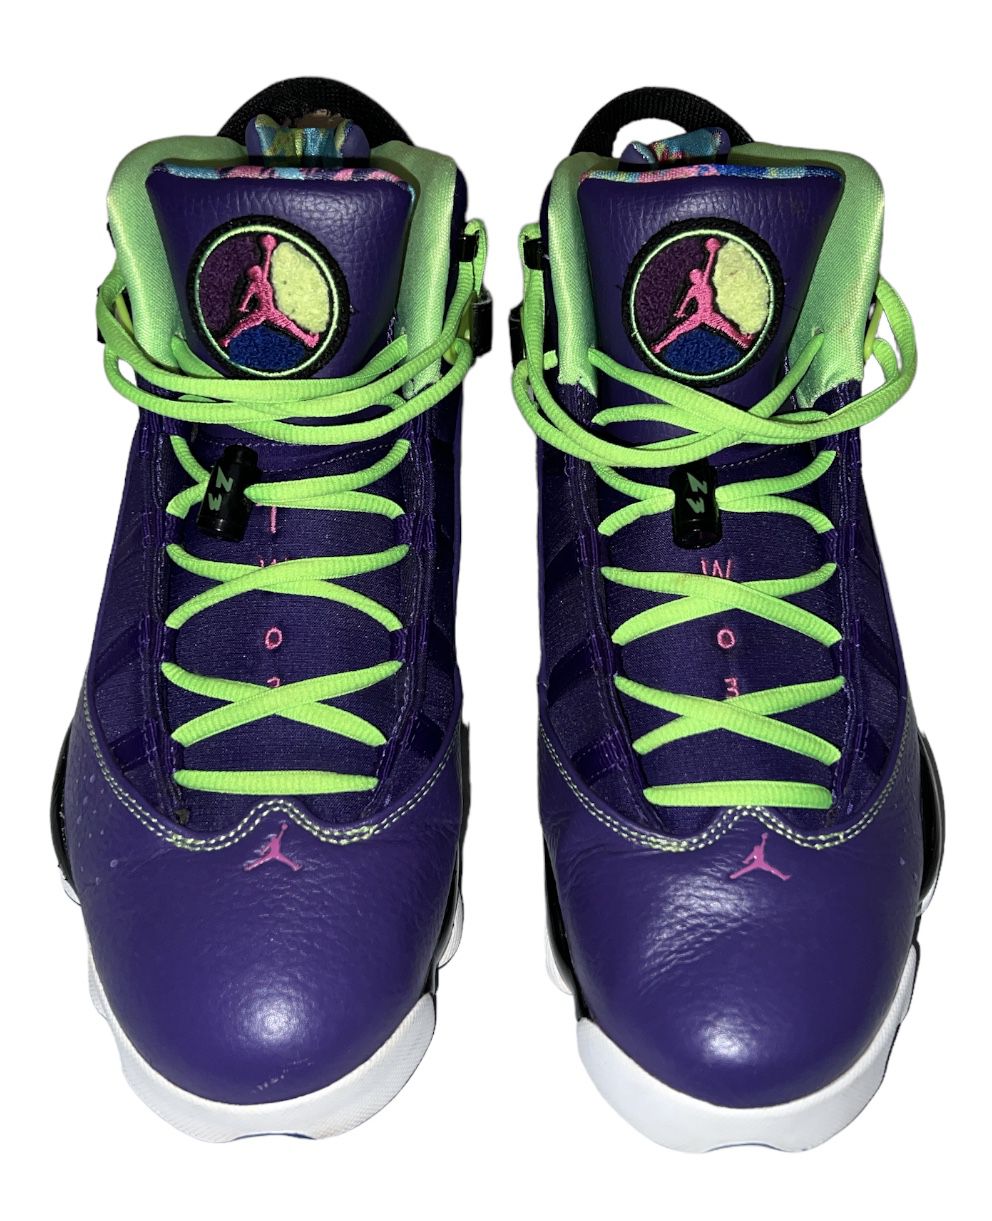 Nike Jordan 6 Rings Bel Air 322992 515 Men’s Size 10.5